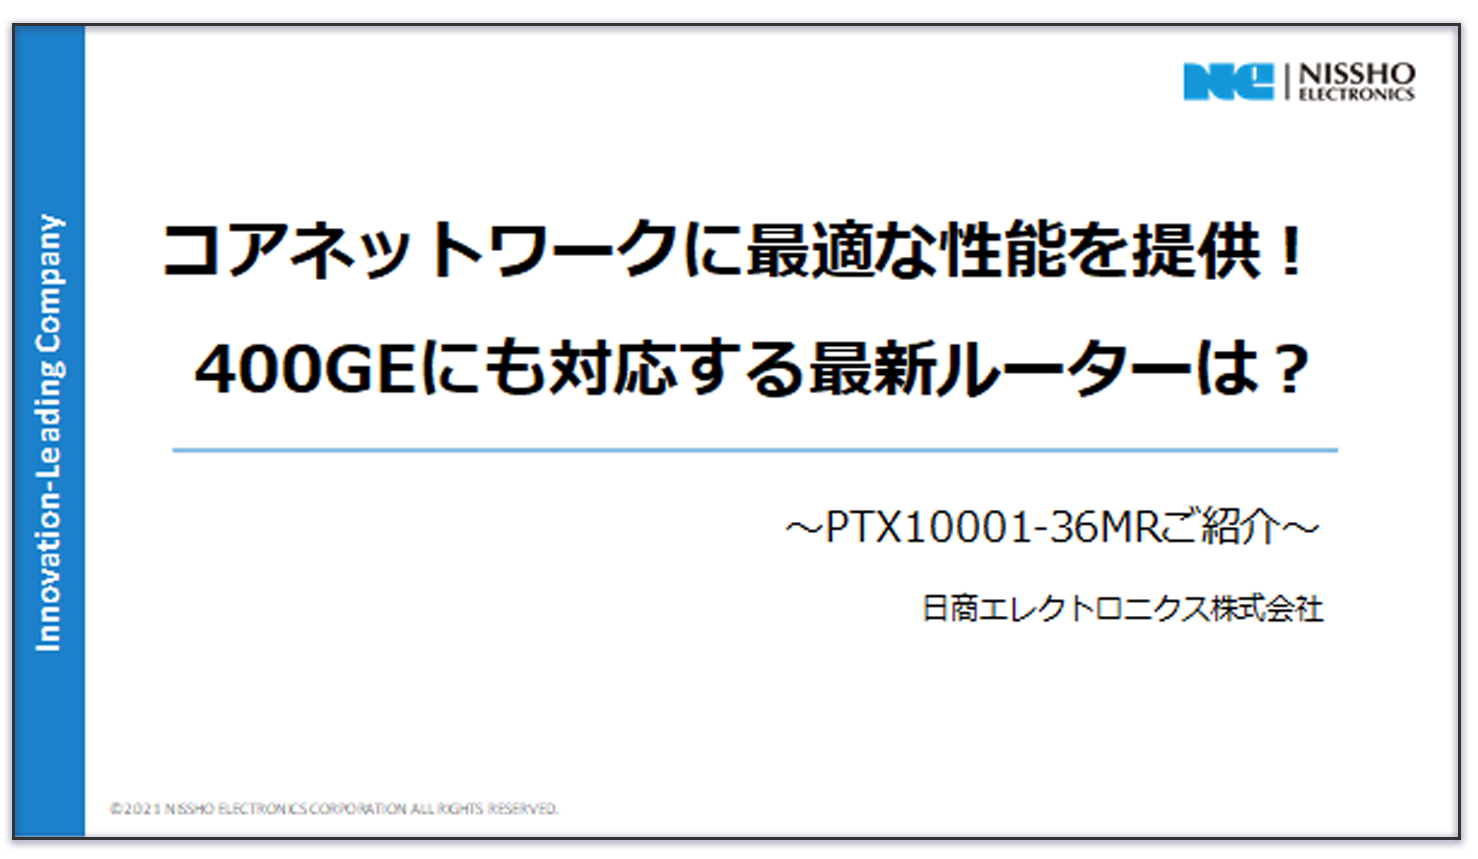 PTX10001-36MRご紹介資料